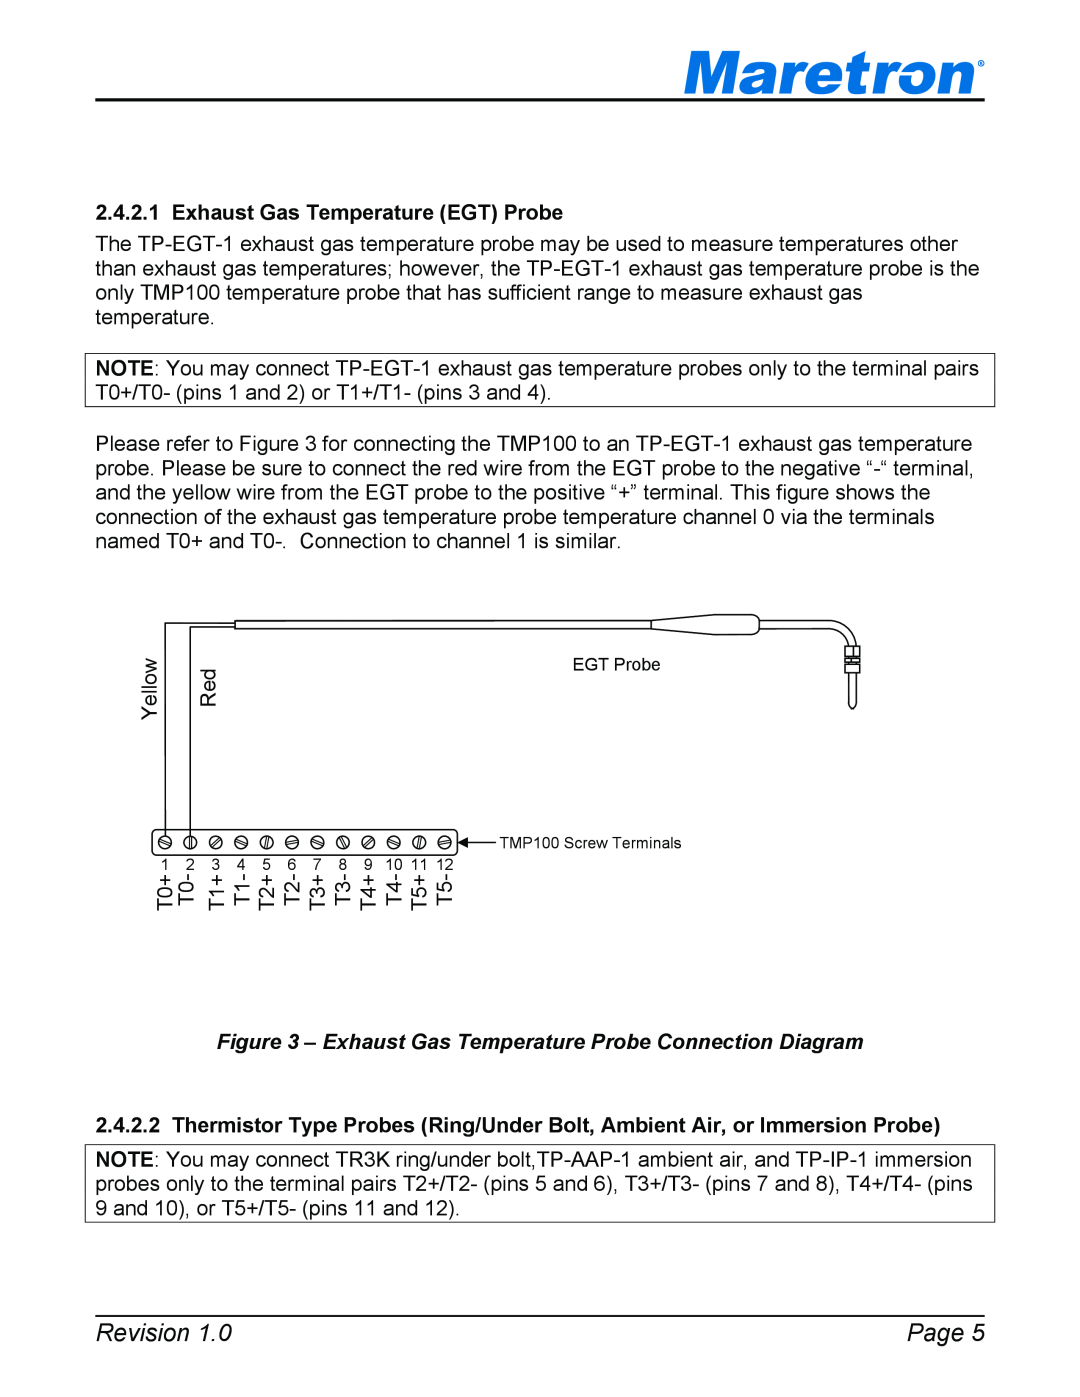 Maretron TP-EGT-1 Exhaust Gas Temperature EGT Probe, Revision, Page, Exhaust Gas Temperature Probe Connection Diagram 